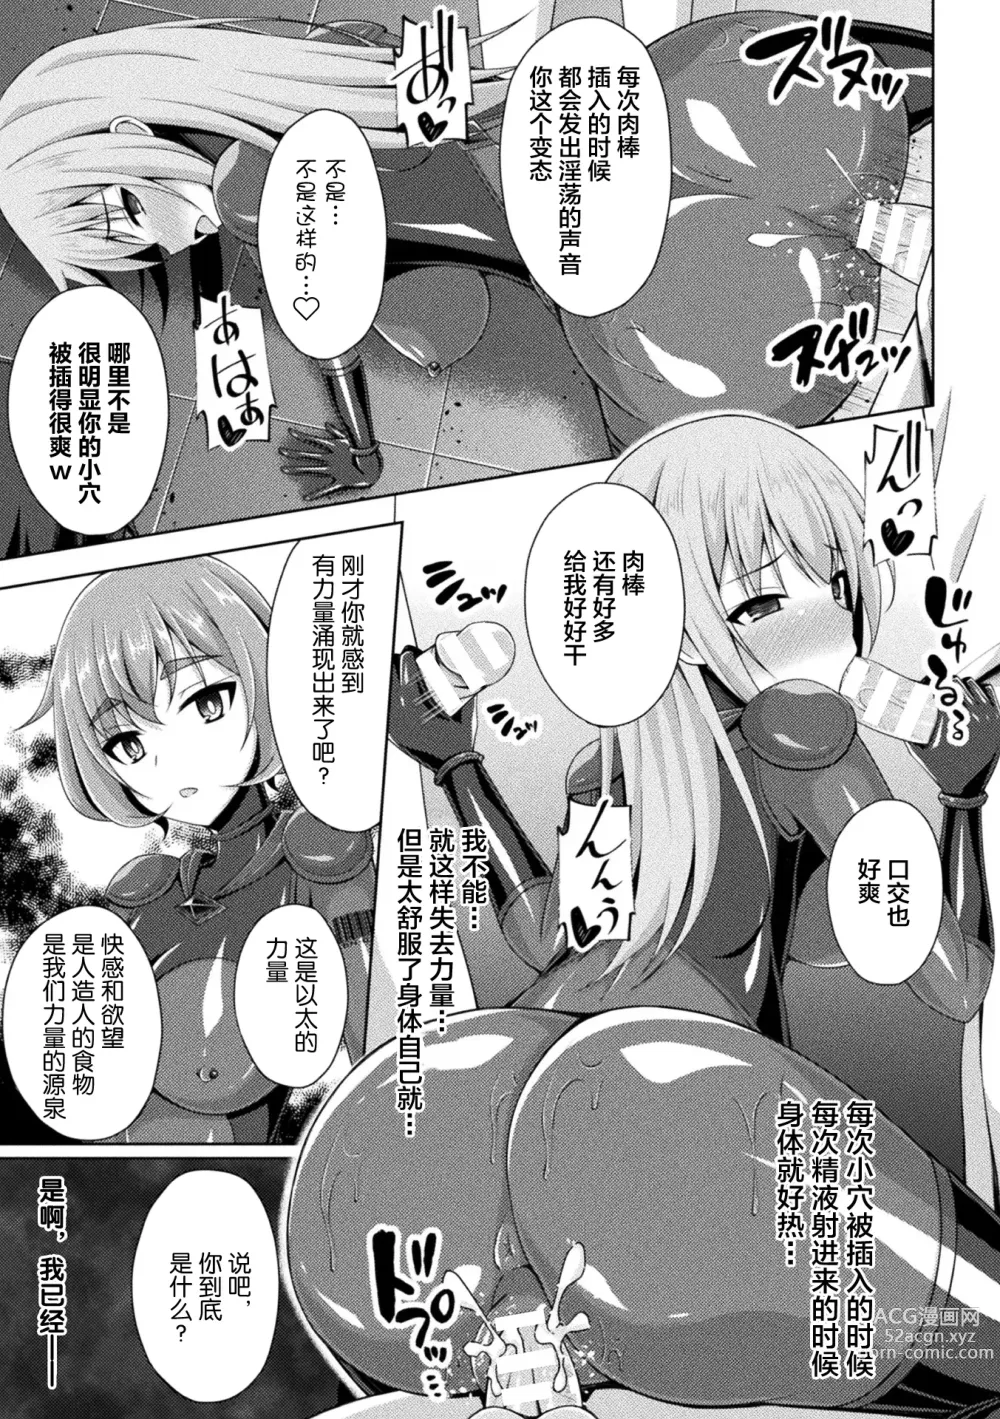 Page 21 of manga Kougyokutenki Glitter Stars ep3. Kuzureru Nichijou, Kuraki En no Yadoru Toki